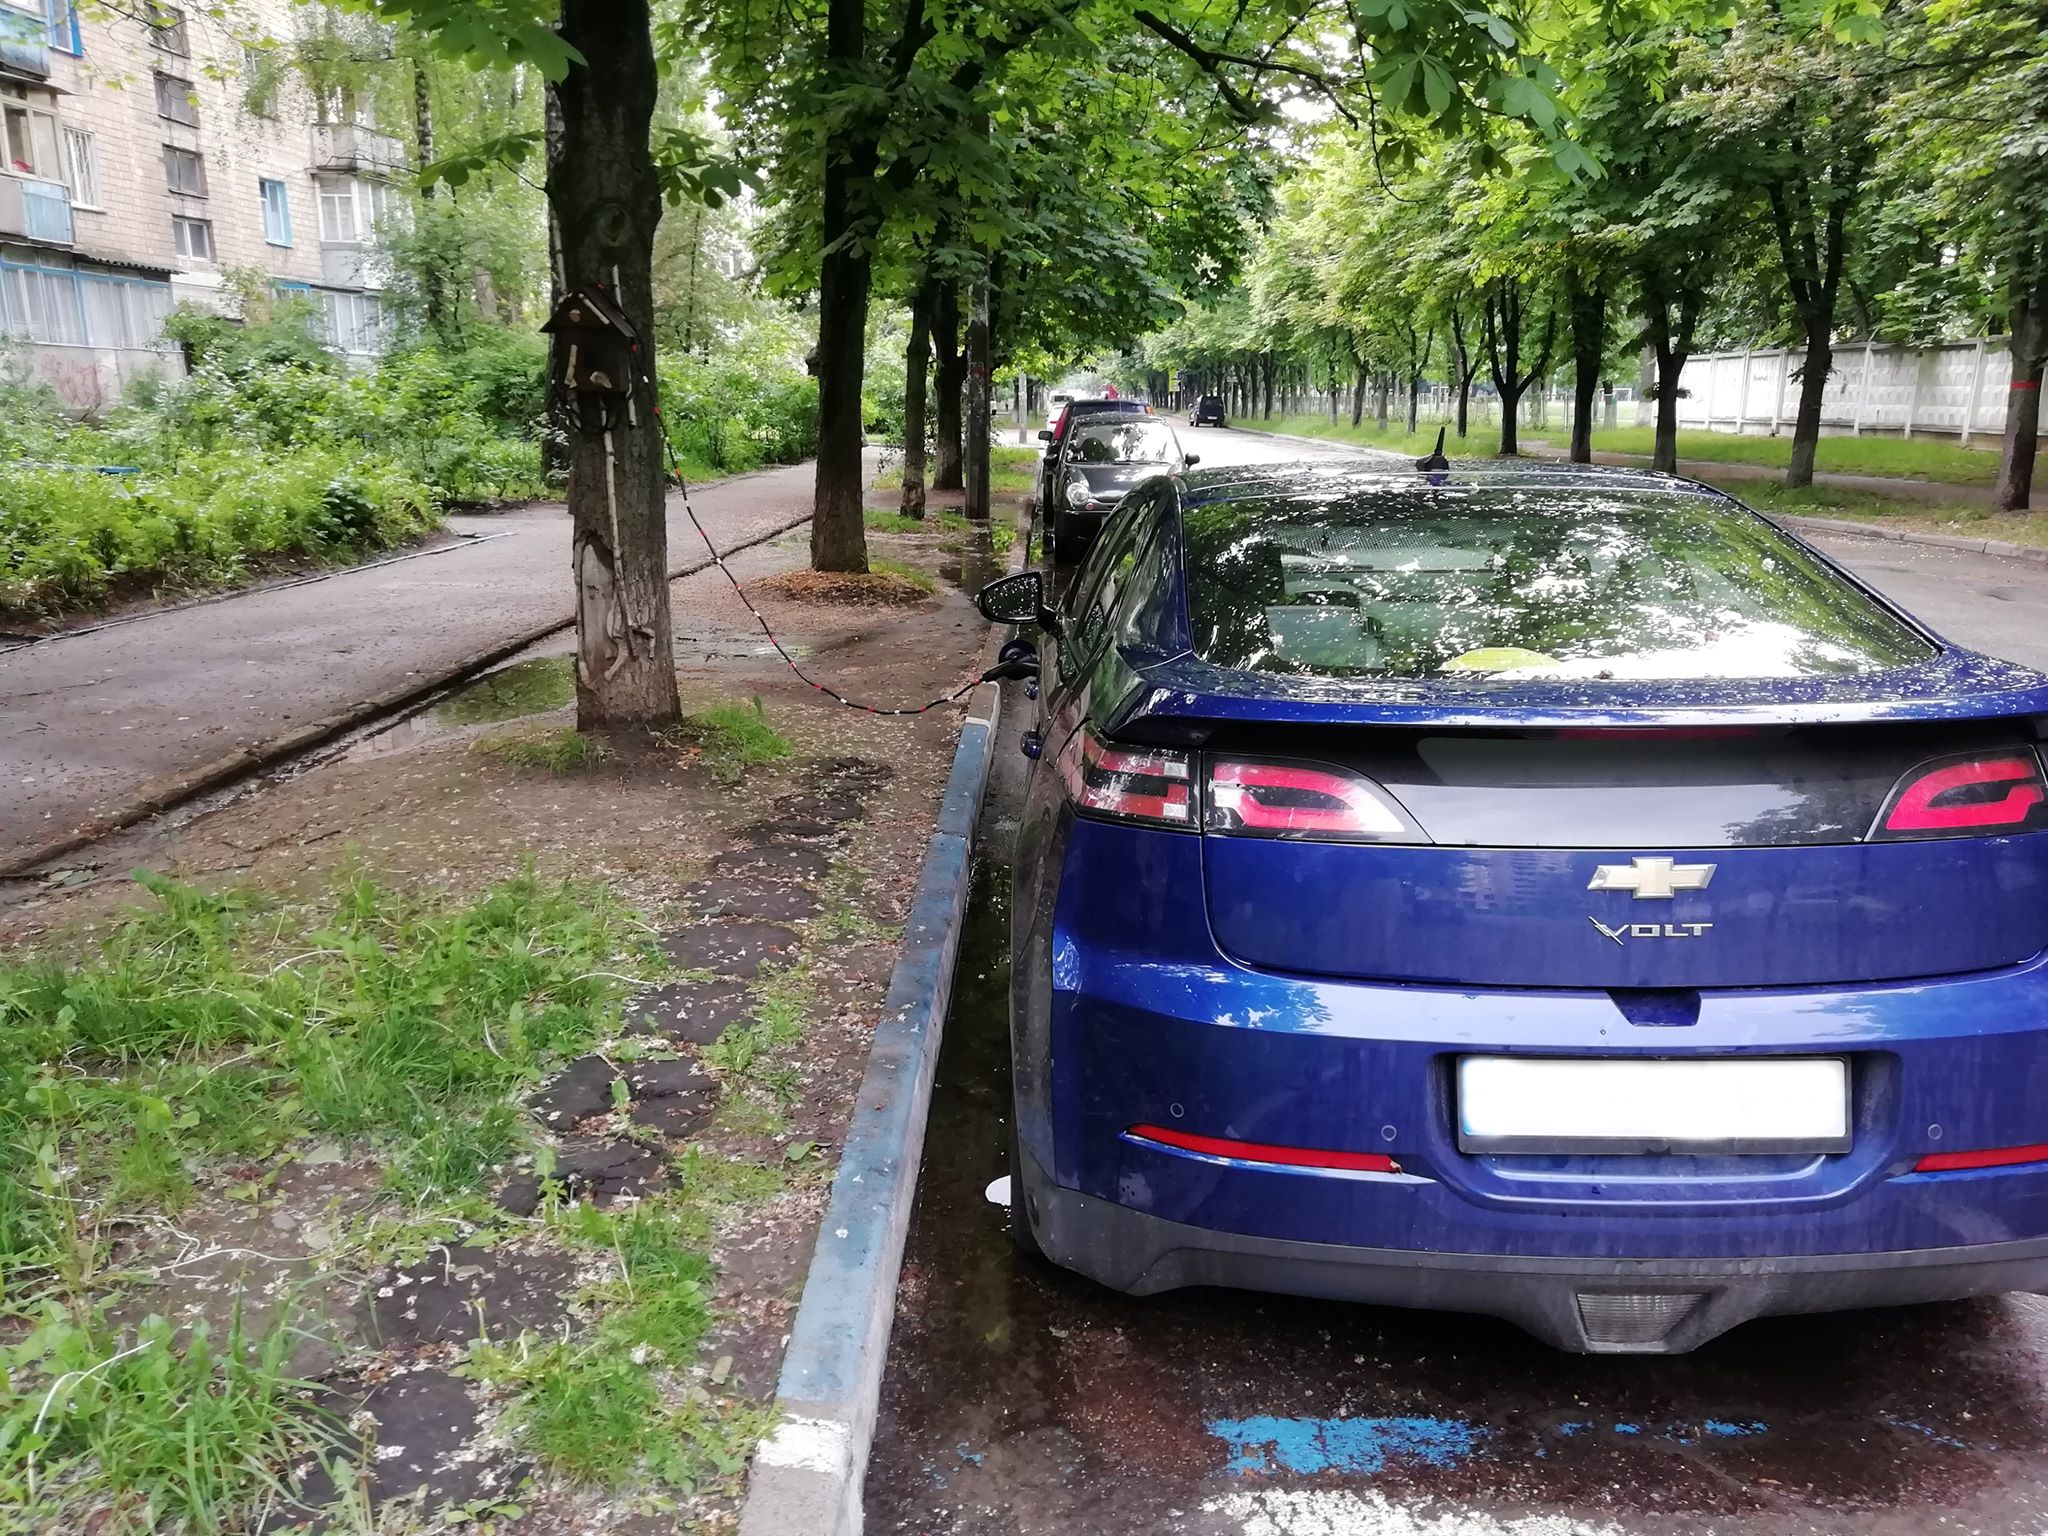 Украинец придумал оригинальный способ зарядки электромобилей